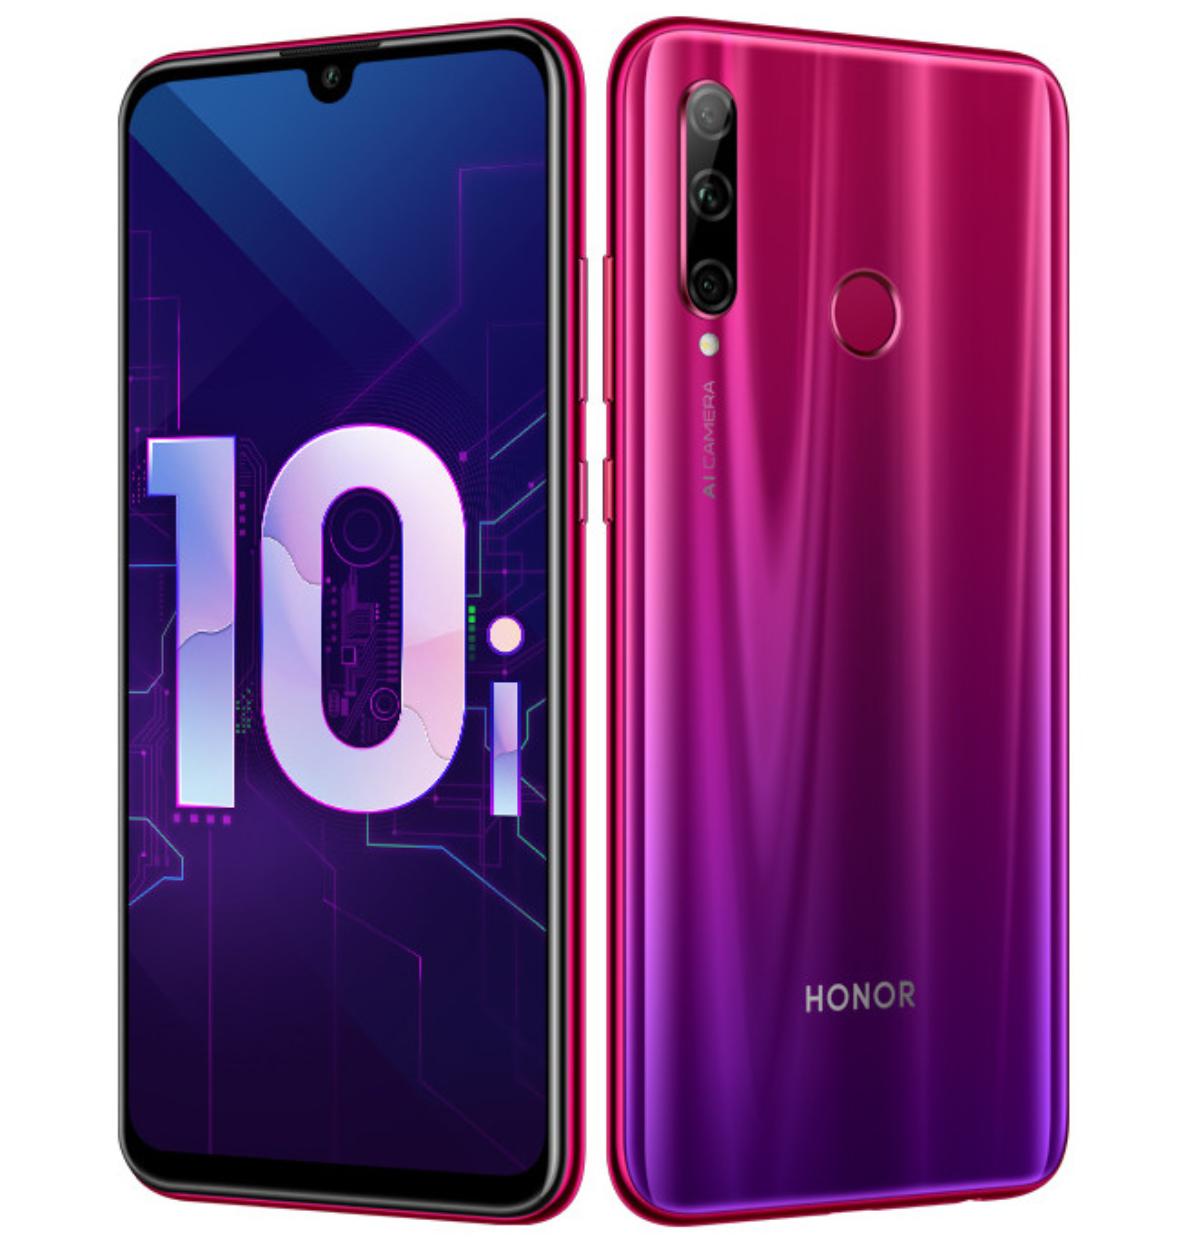 مميزات وعيوب هاتف Honor 10i المنافس الجديد لهواتف Huawei متوسطة الفئة